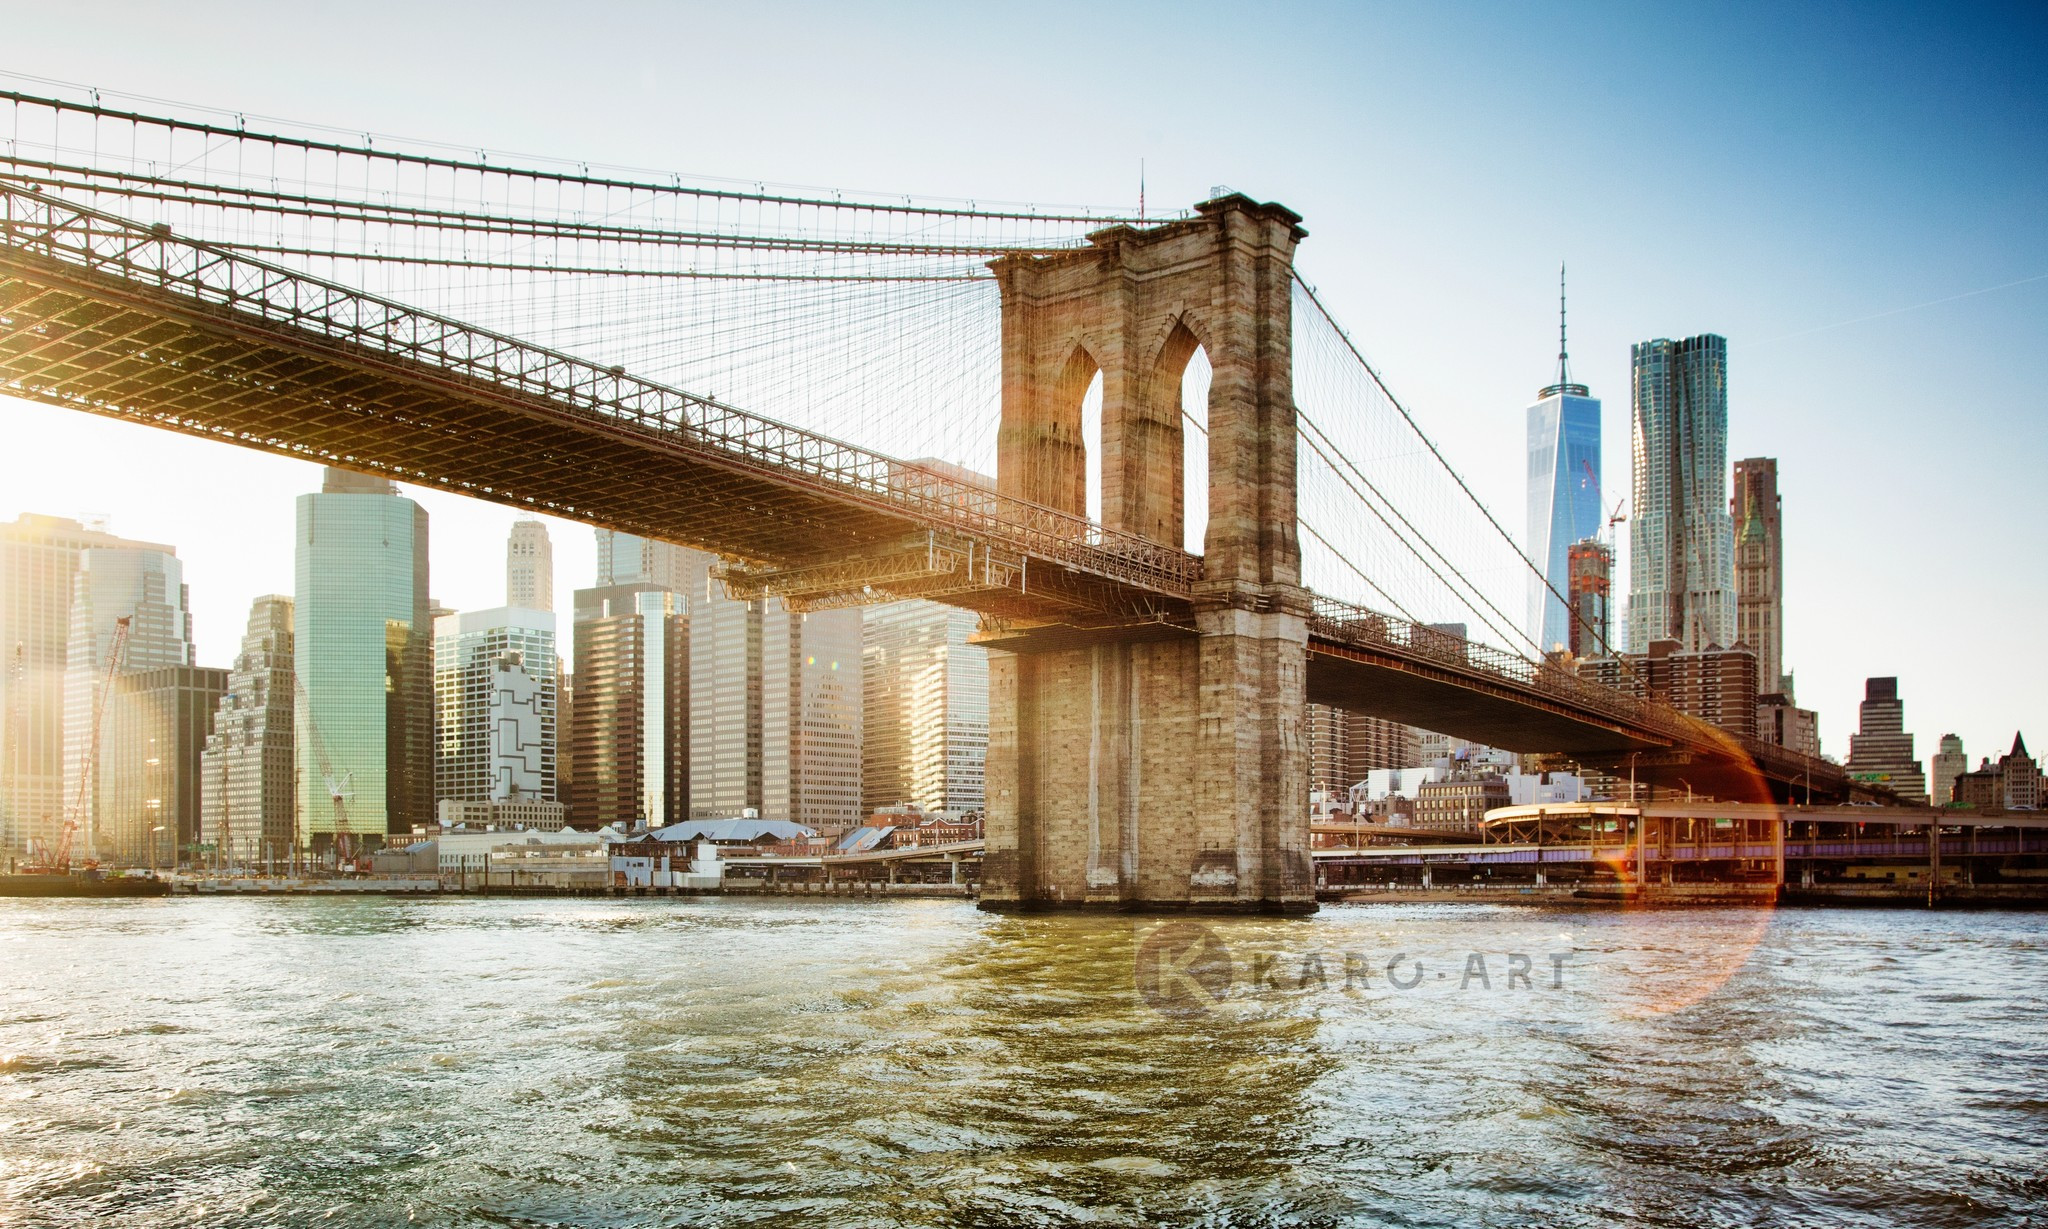 Afbeelding op acrylglas - Brooklyn Bridge, New York